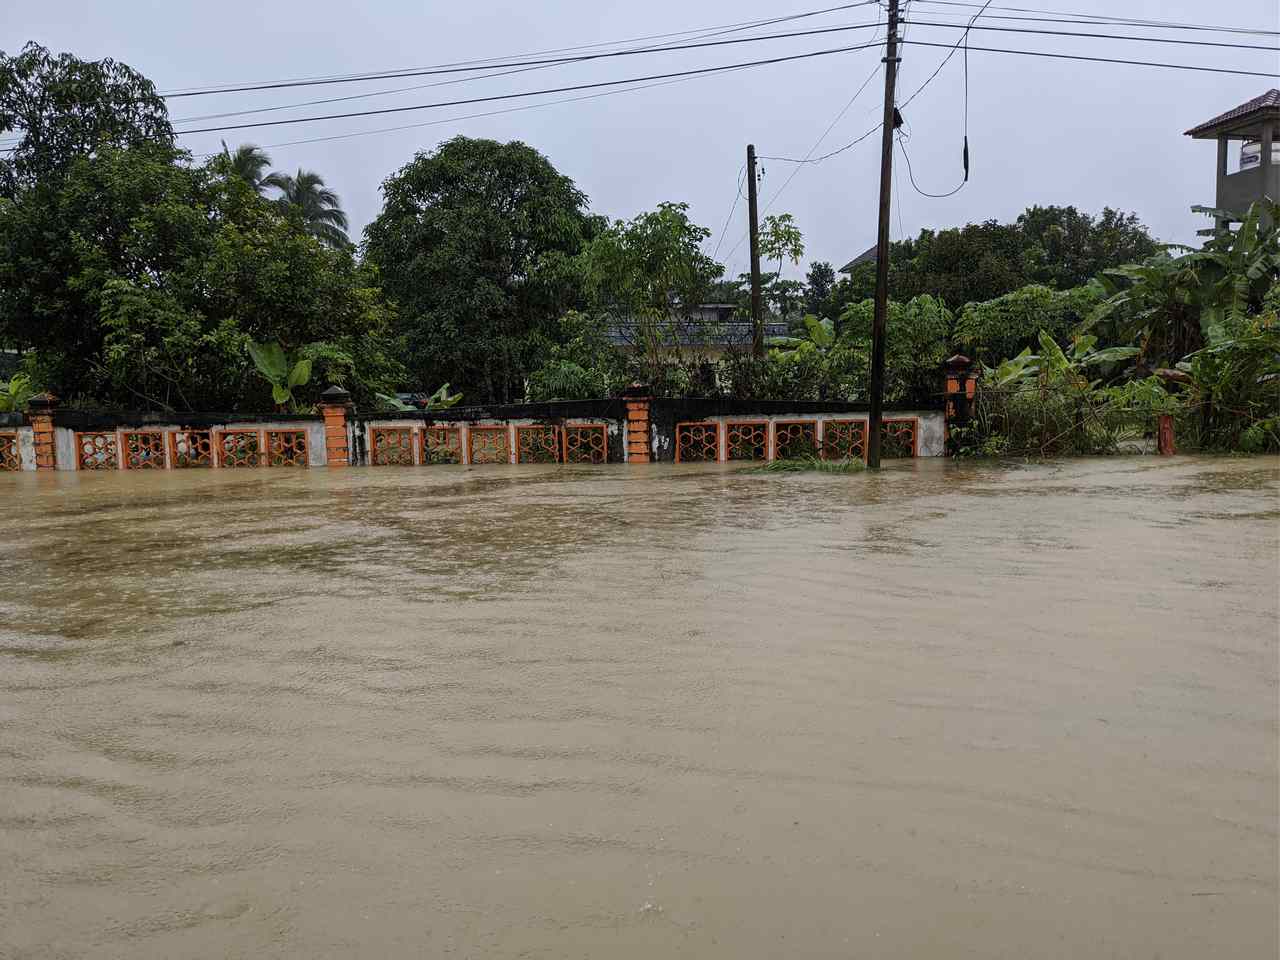 Jornal Opinião Goiás - Pesquisa identifica locais com maior risco de inundação